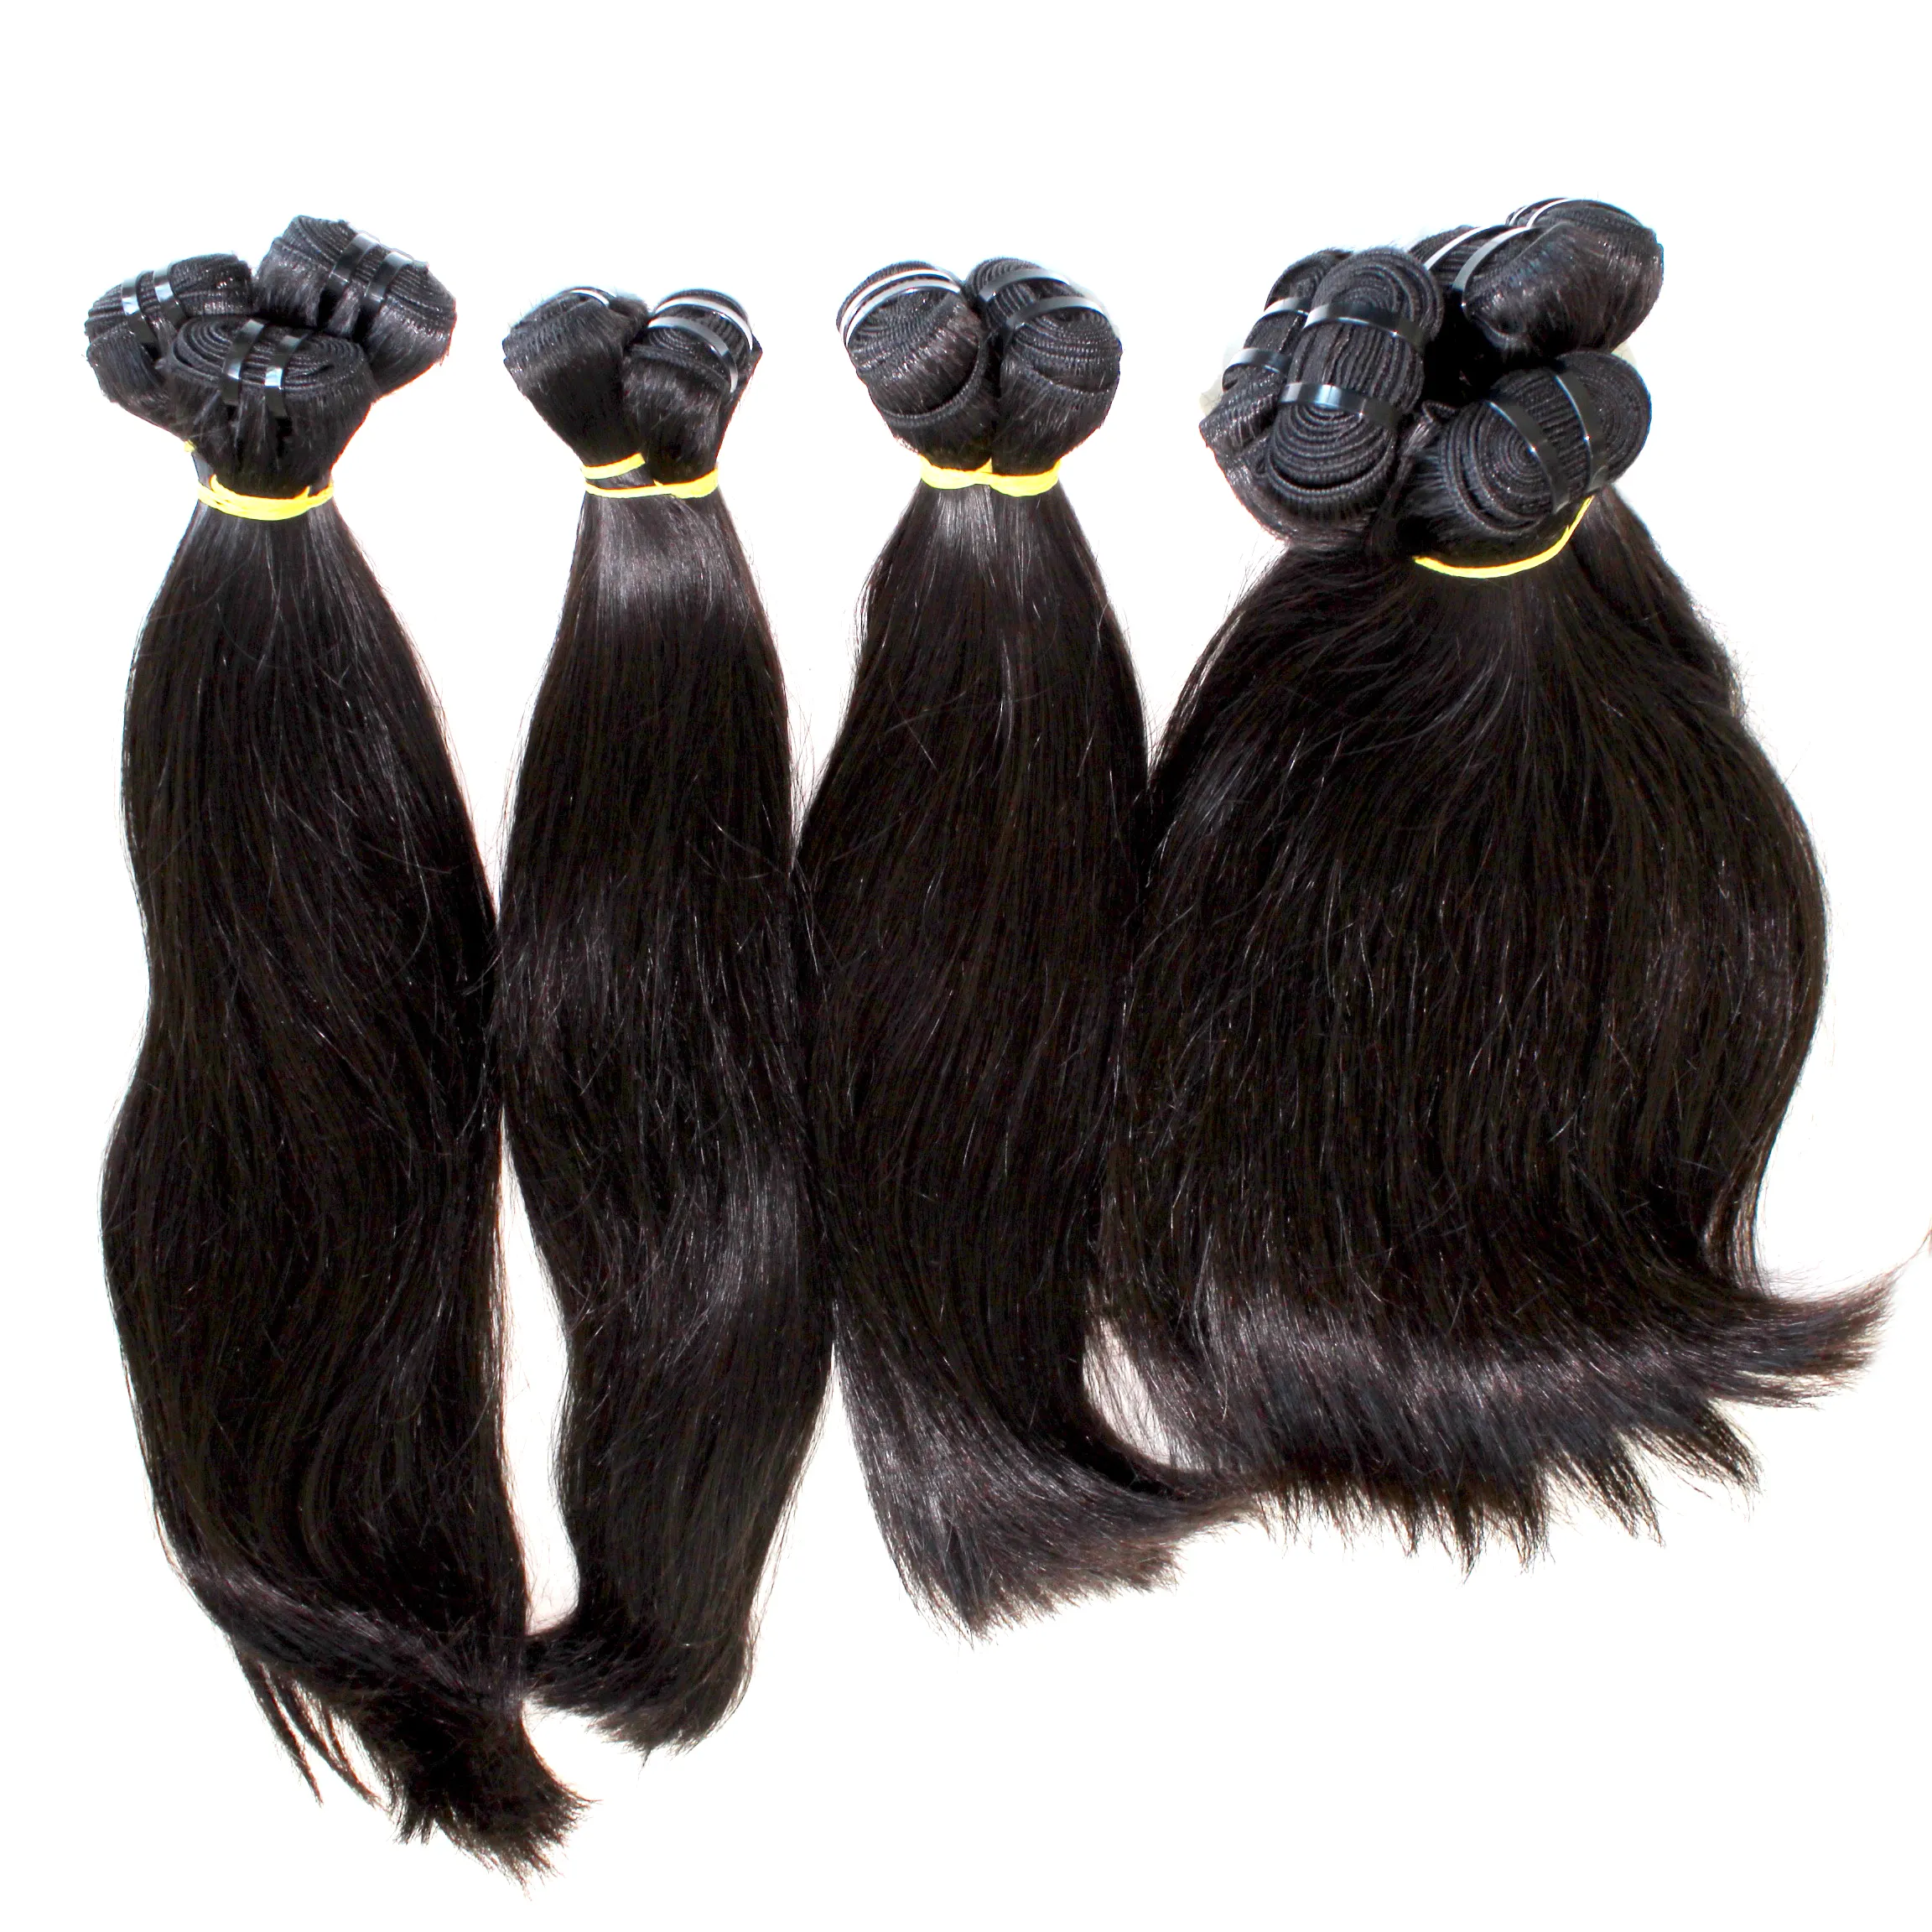 الشعر بكميات كبيرة ، بيع بالجملة مخزون فيتنام الأكثر مبيعًا ، 10 أ من المنك البكر